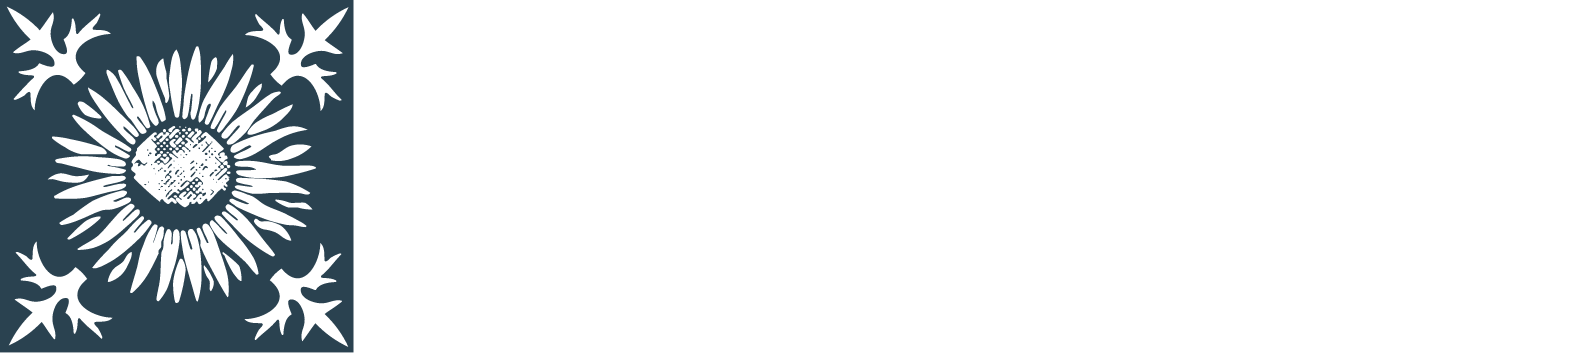 Rhön-Klinikum Logo groß für dunkle Hintergründe (transparentes PNG)